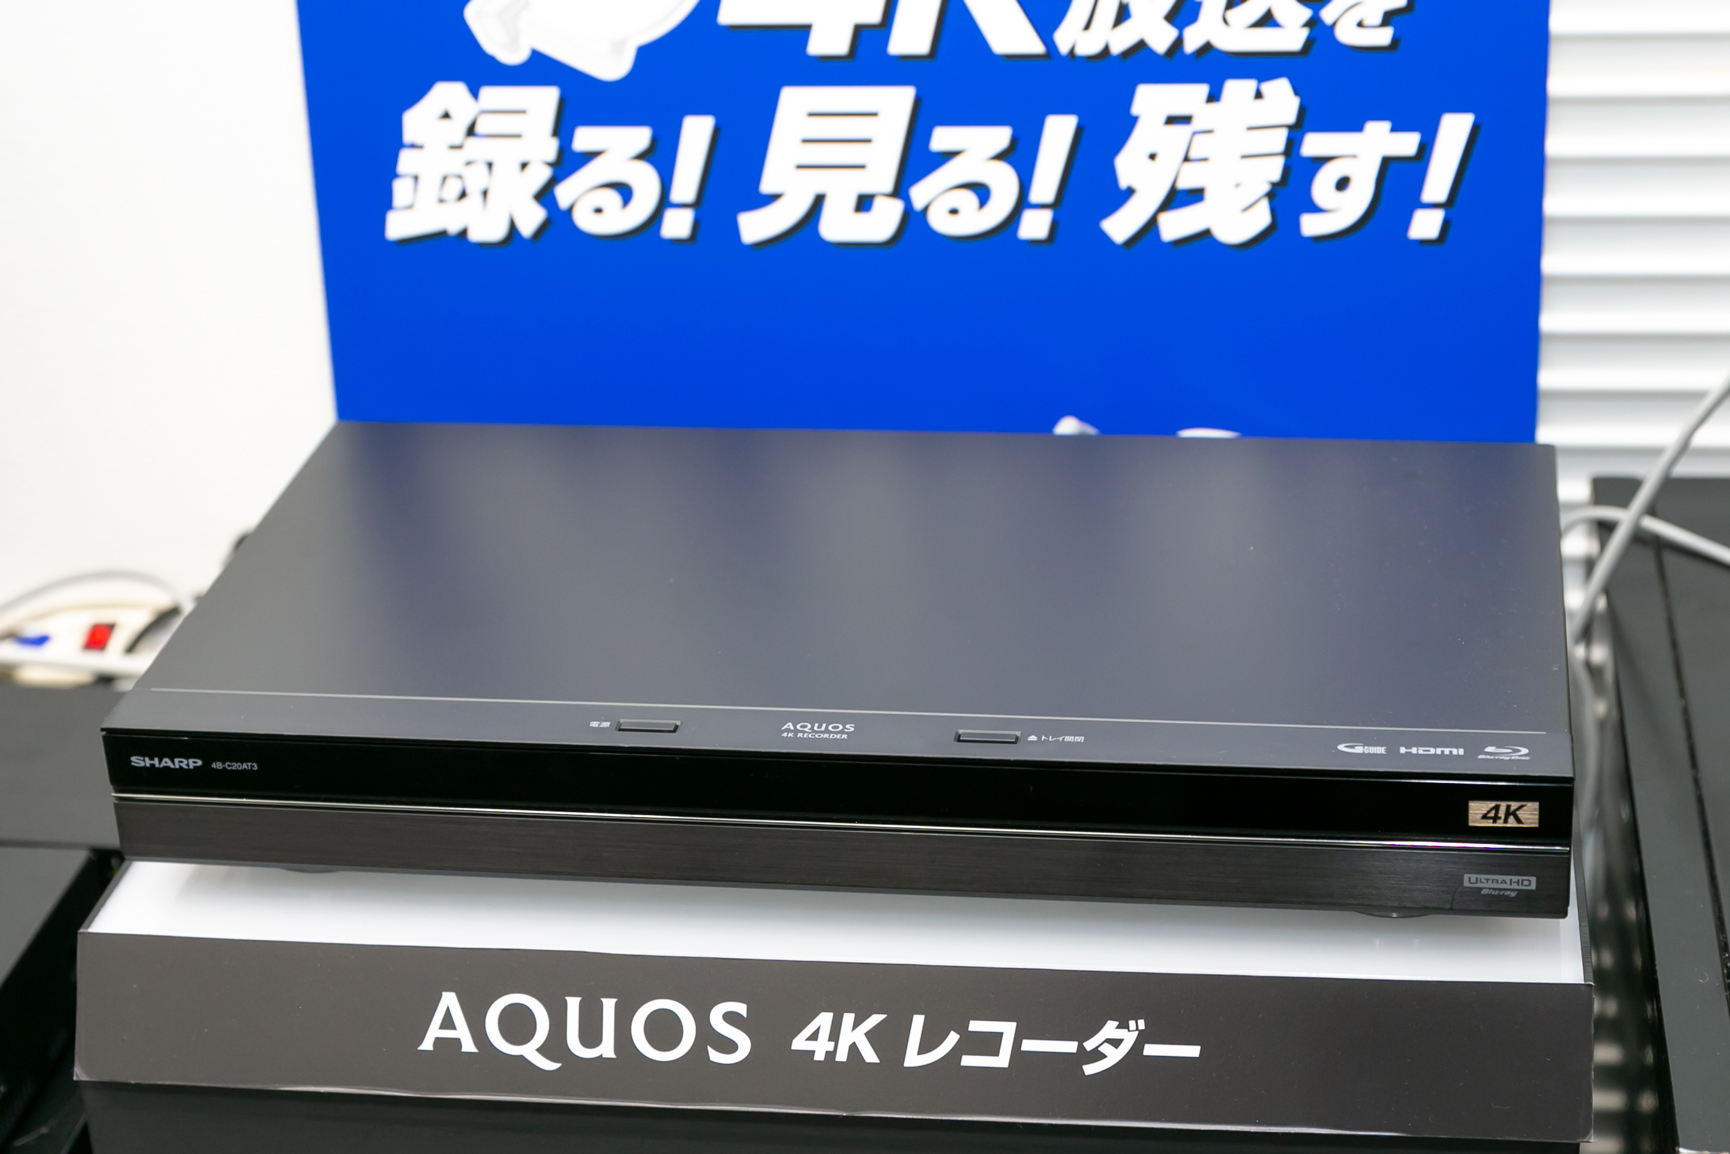 AQUOS 4Kレコーダ買ったら、どう使う? シャープが実演 - AV Watch